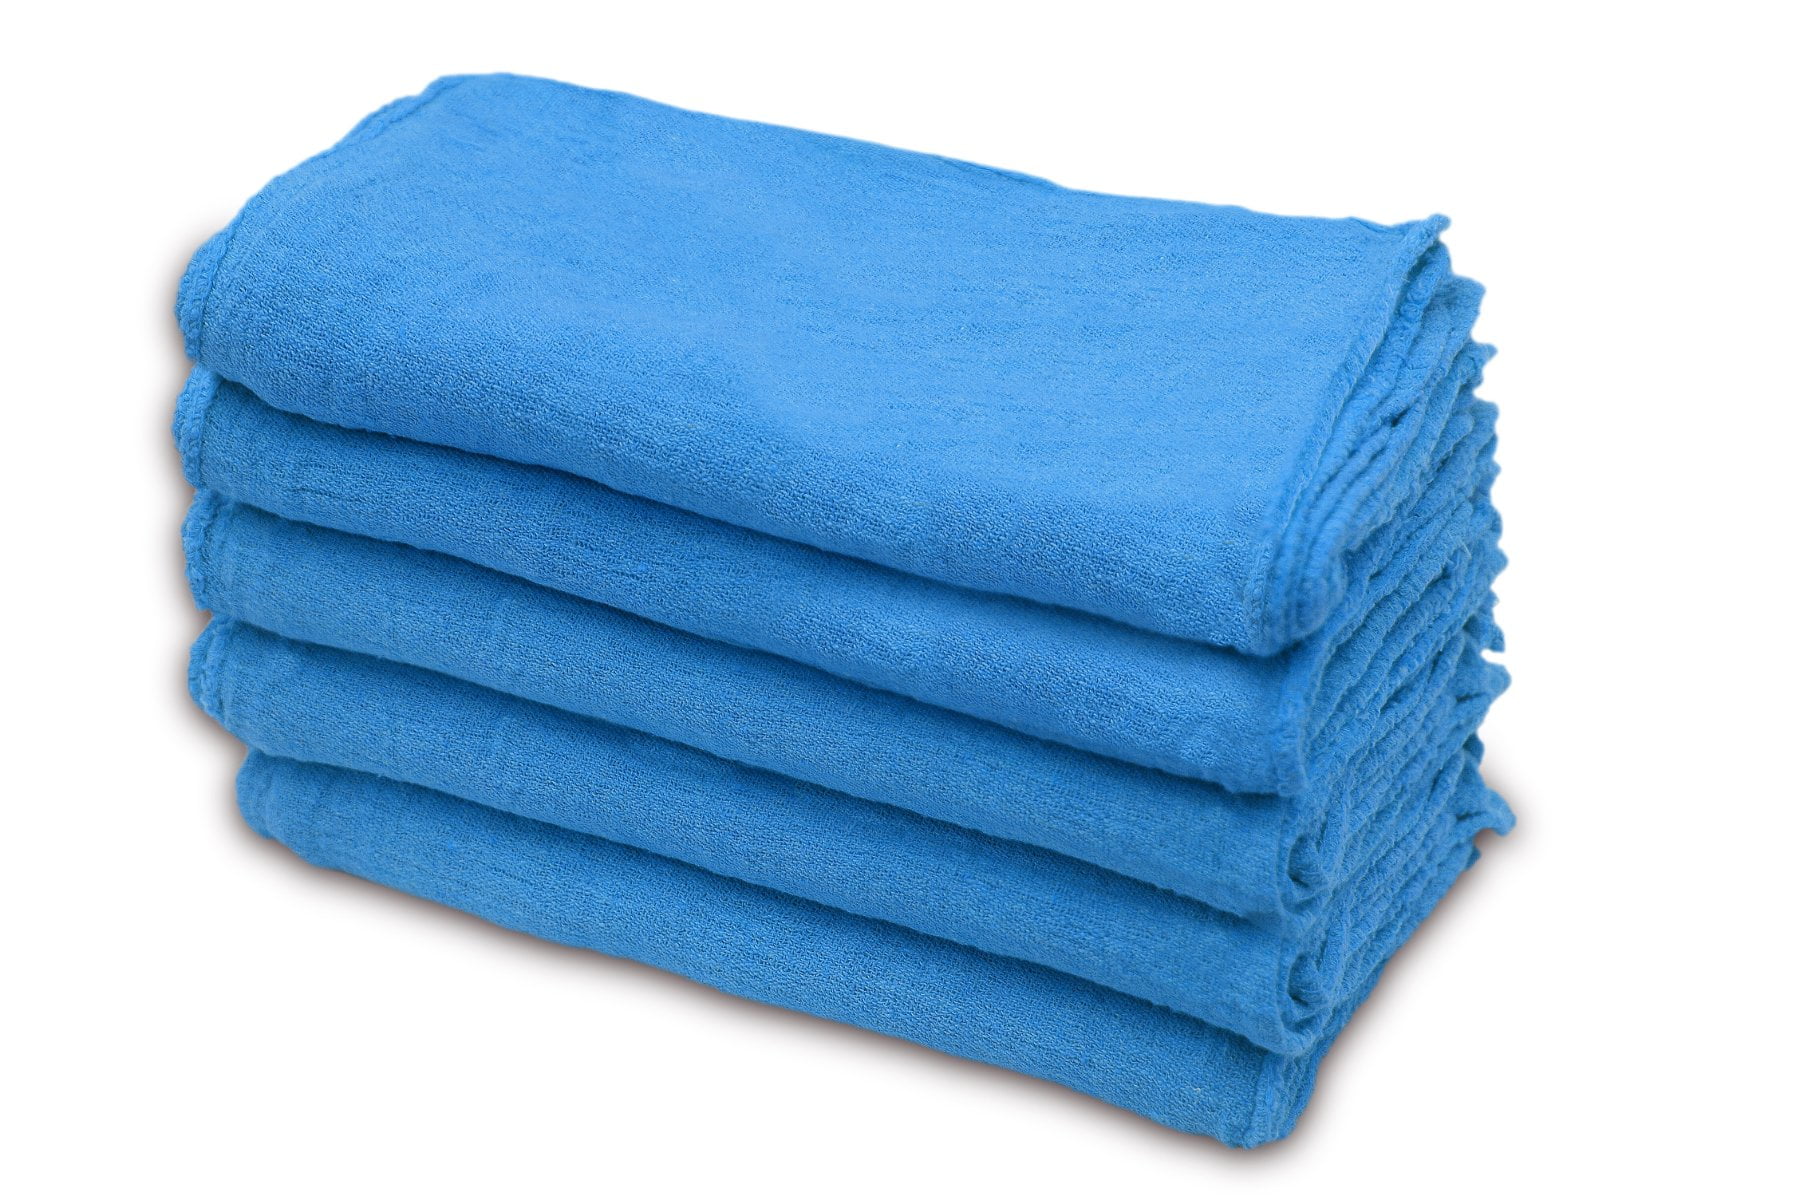 Textile Empire Shop Towels Cotton Rags - Shop Rags for Cleaning Hand Towels Bulk Facial Towels Shop Towels Reusable Eco Friendly Wash Cloths Kitchen